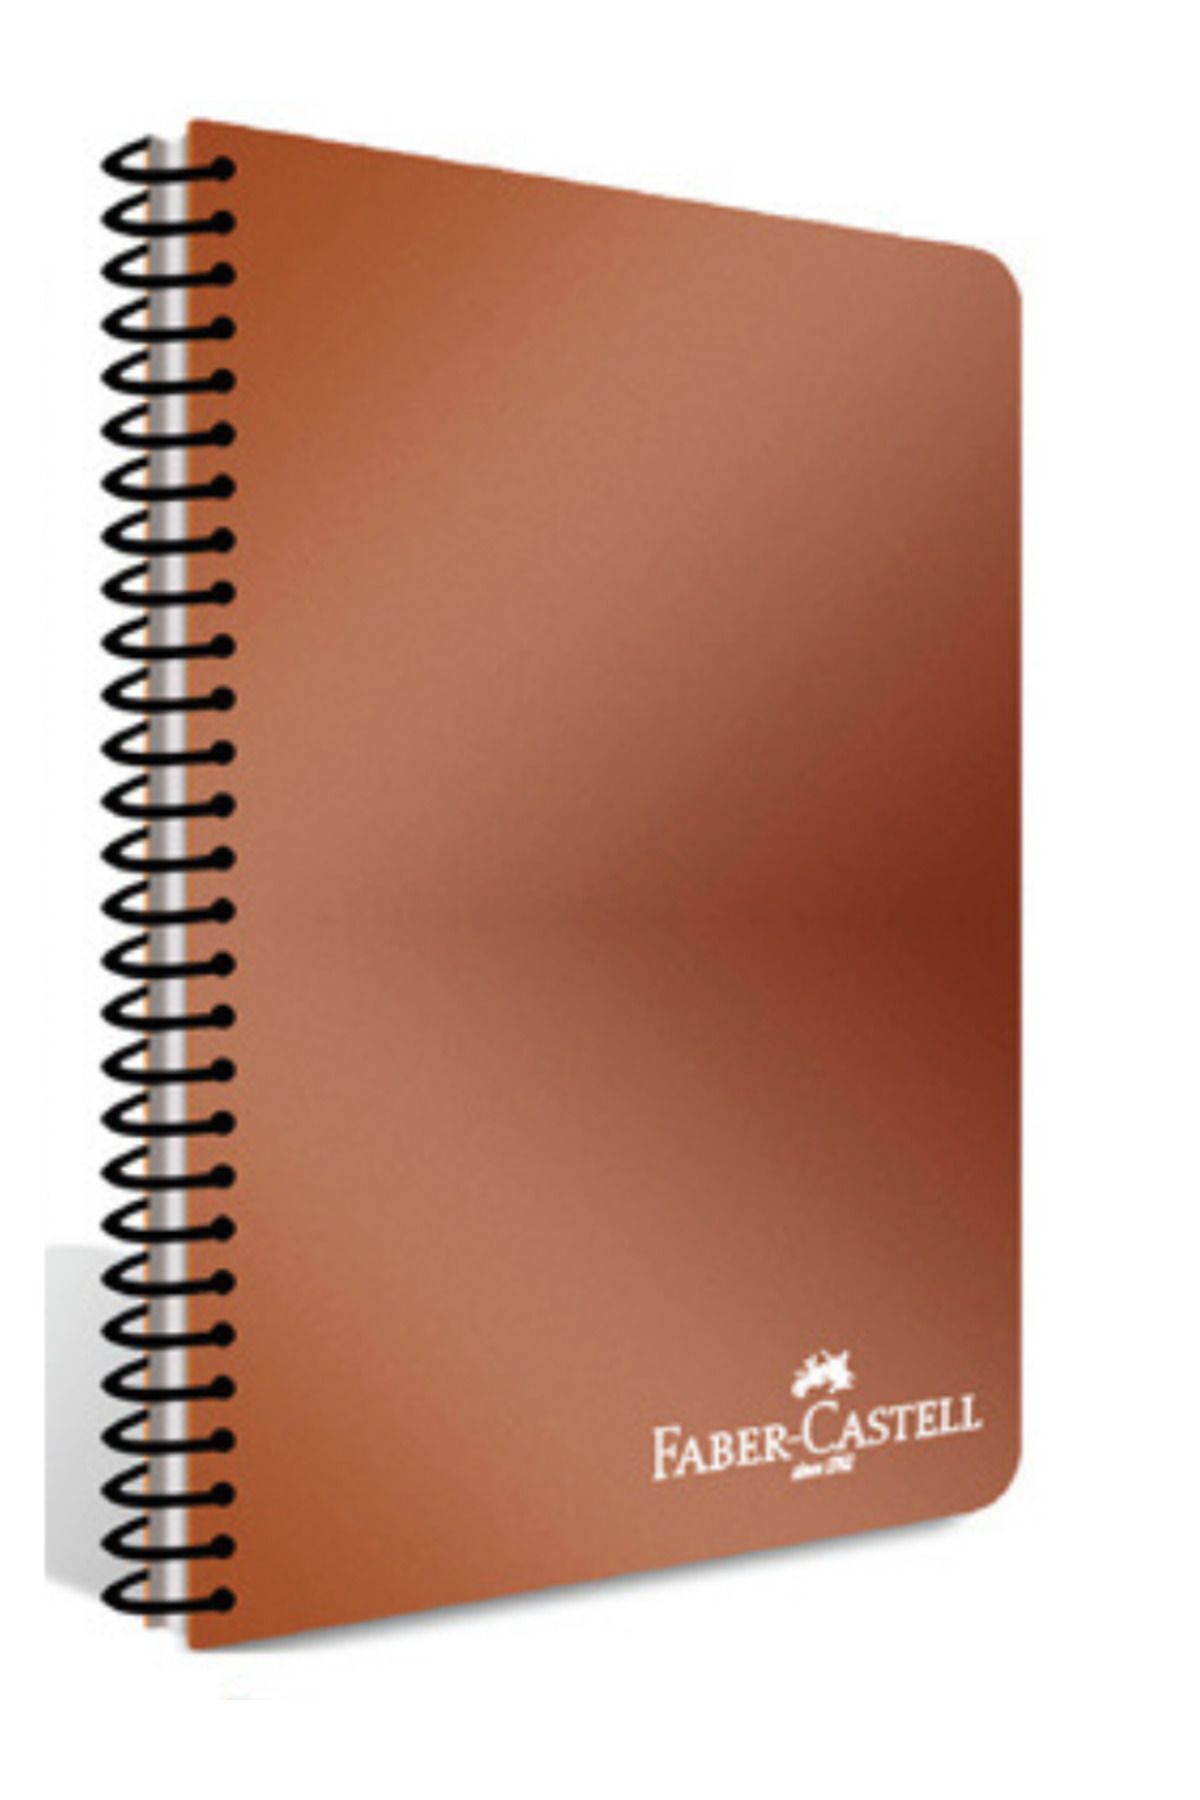 Faber Castell PLASTİK KAPAKLI SPİRALLİ DEFTER METALİK RENKLER A4 100 YP. ÇİZGİSİZ – METALİK KİREMİT